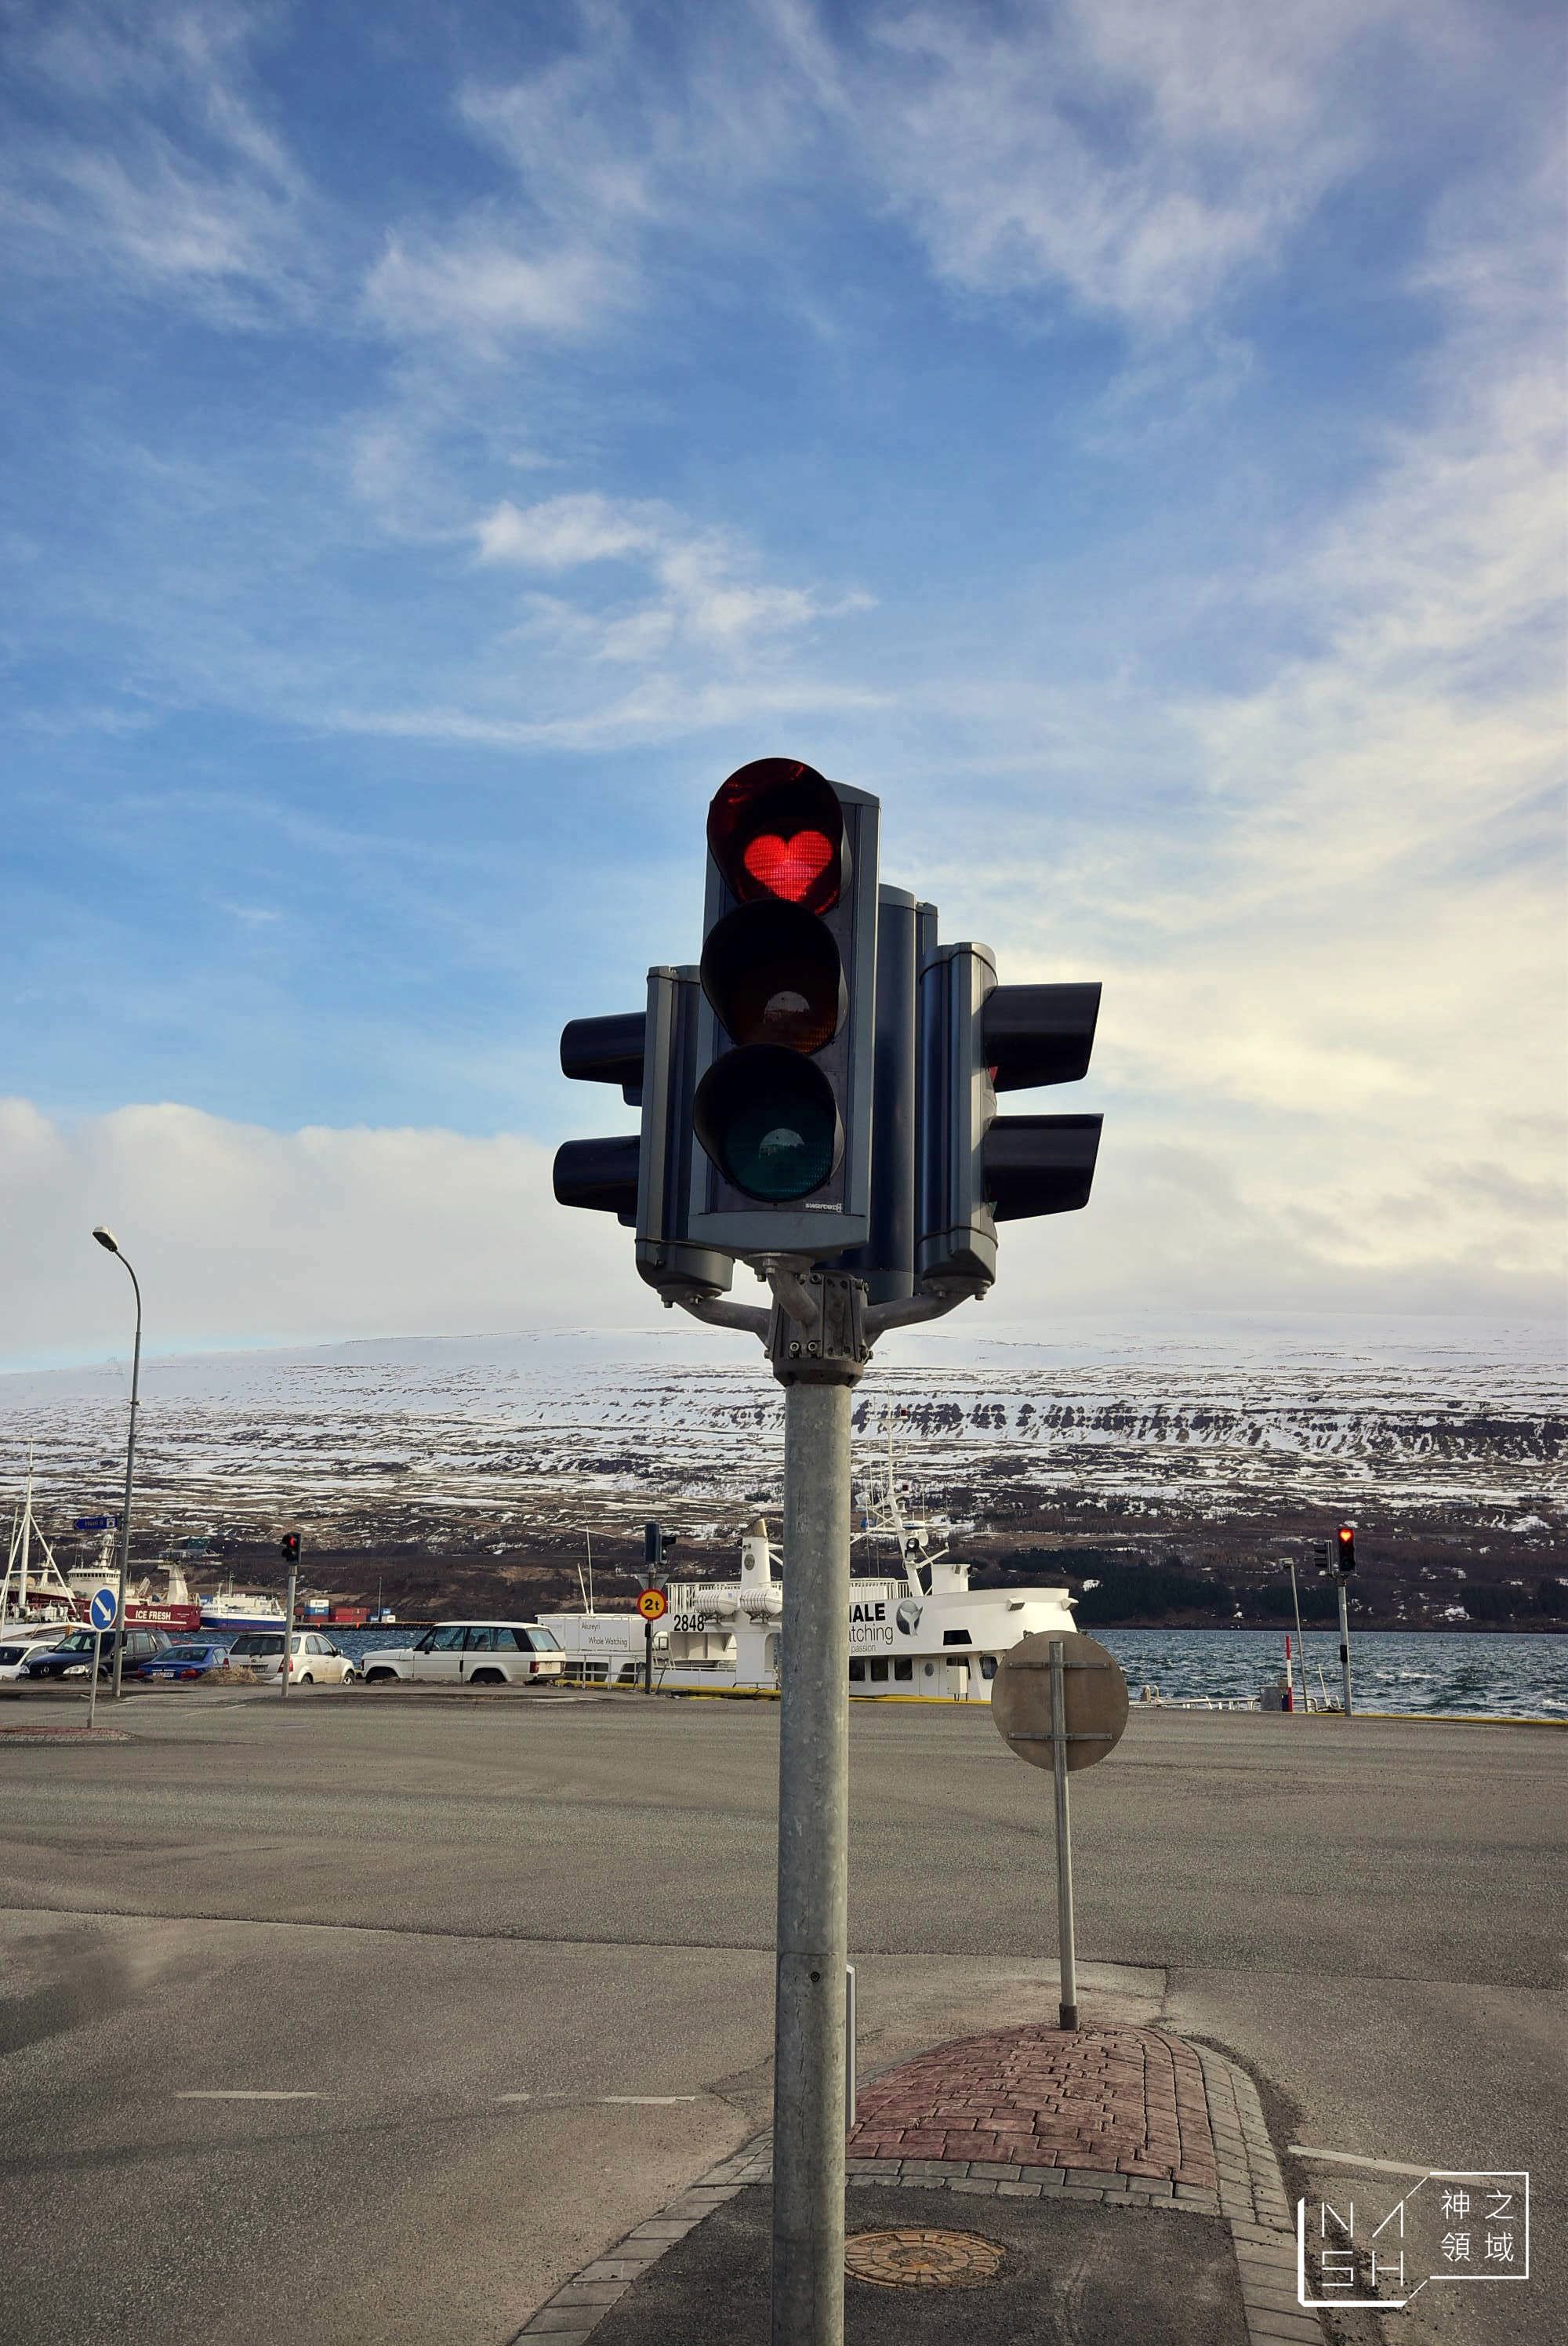 Akureyri,阿克雷里教堂,阿克雷里紅綠燈,冰島自由行環島景點推薦,阿克雷里